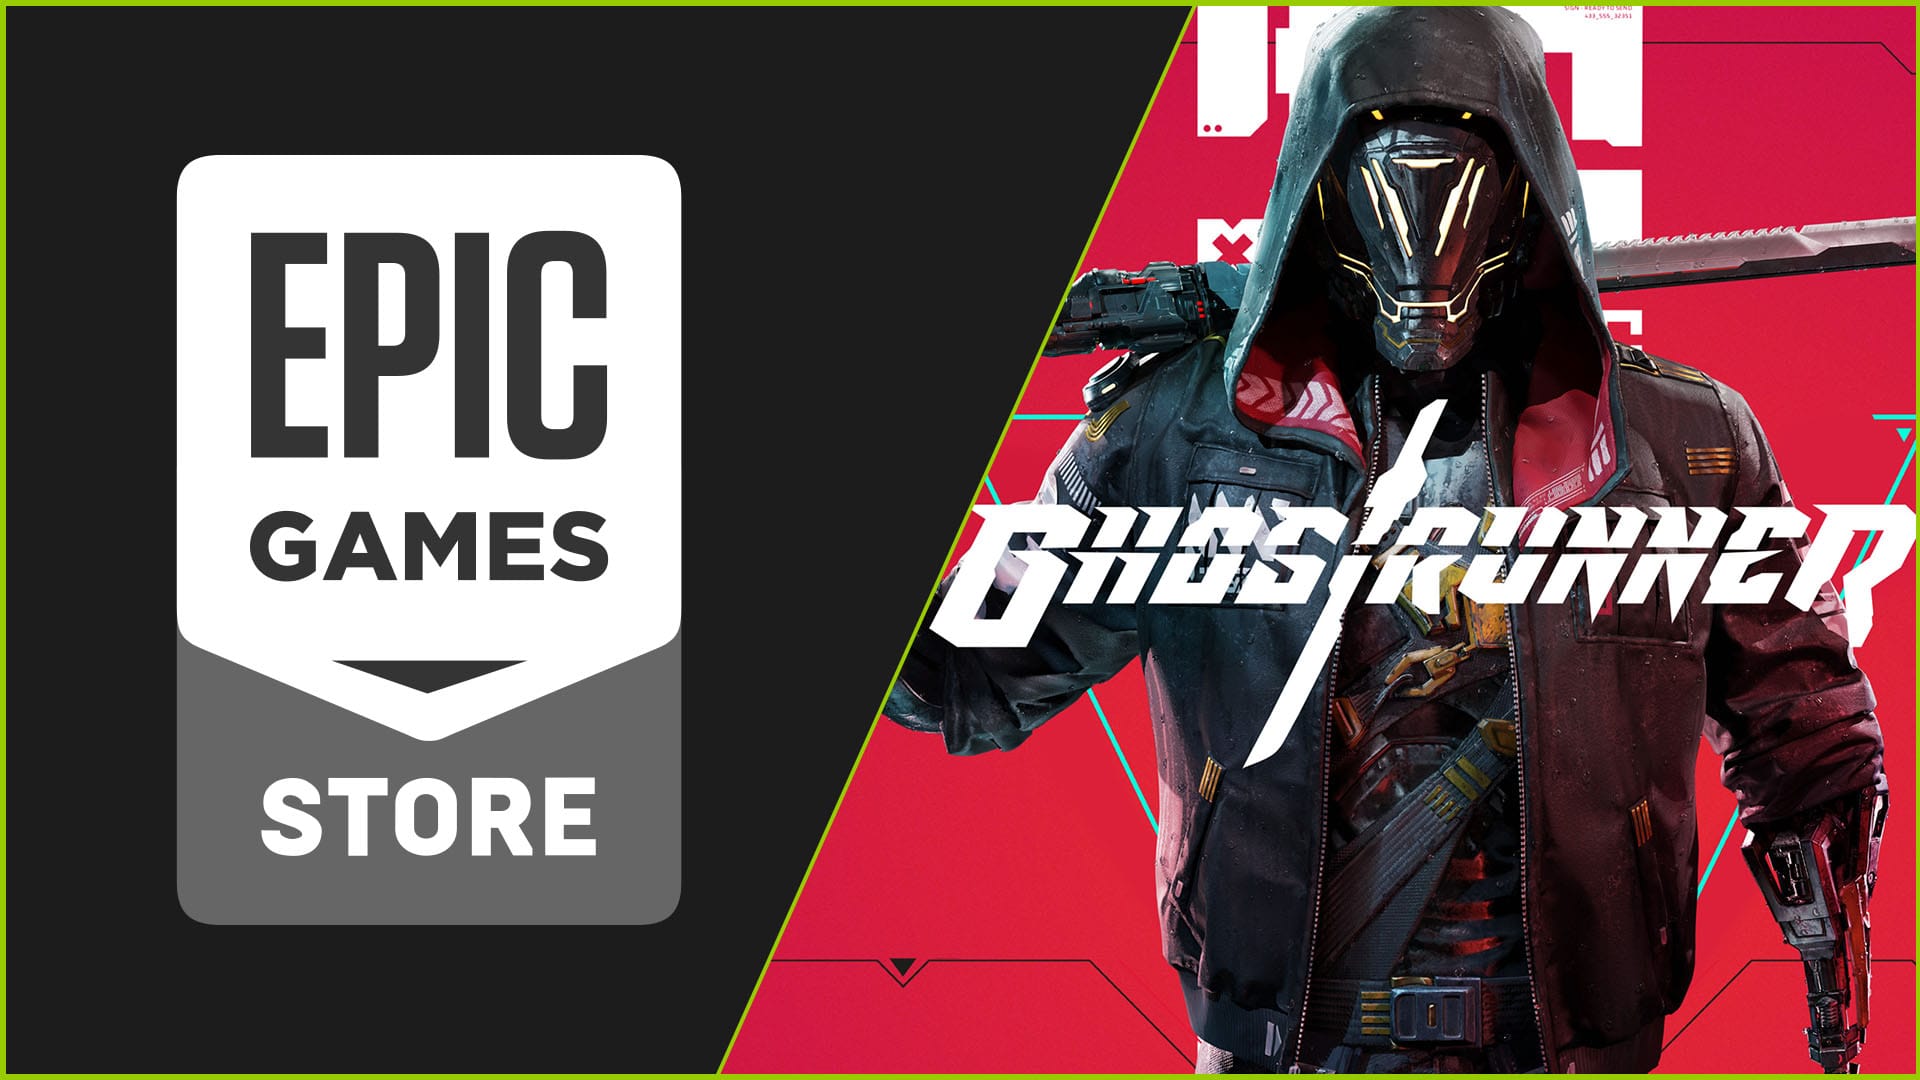 Ghostrunner ara és gratuït durant un dia a The Epic Games Store